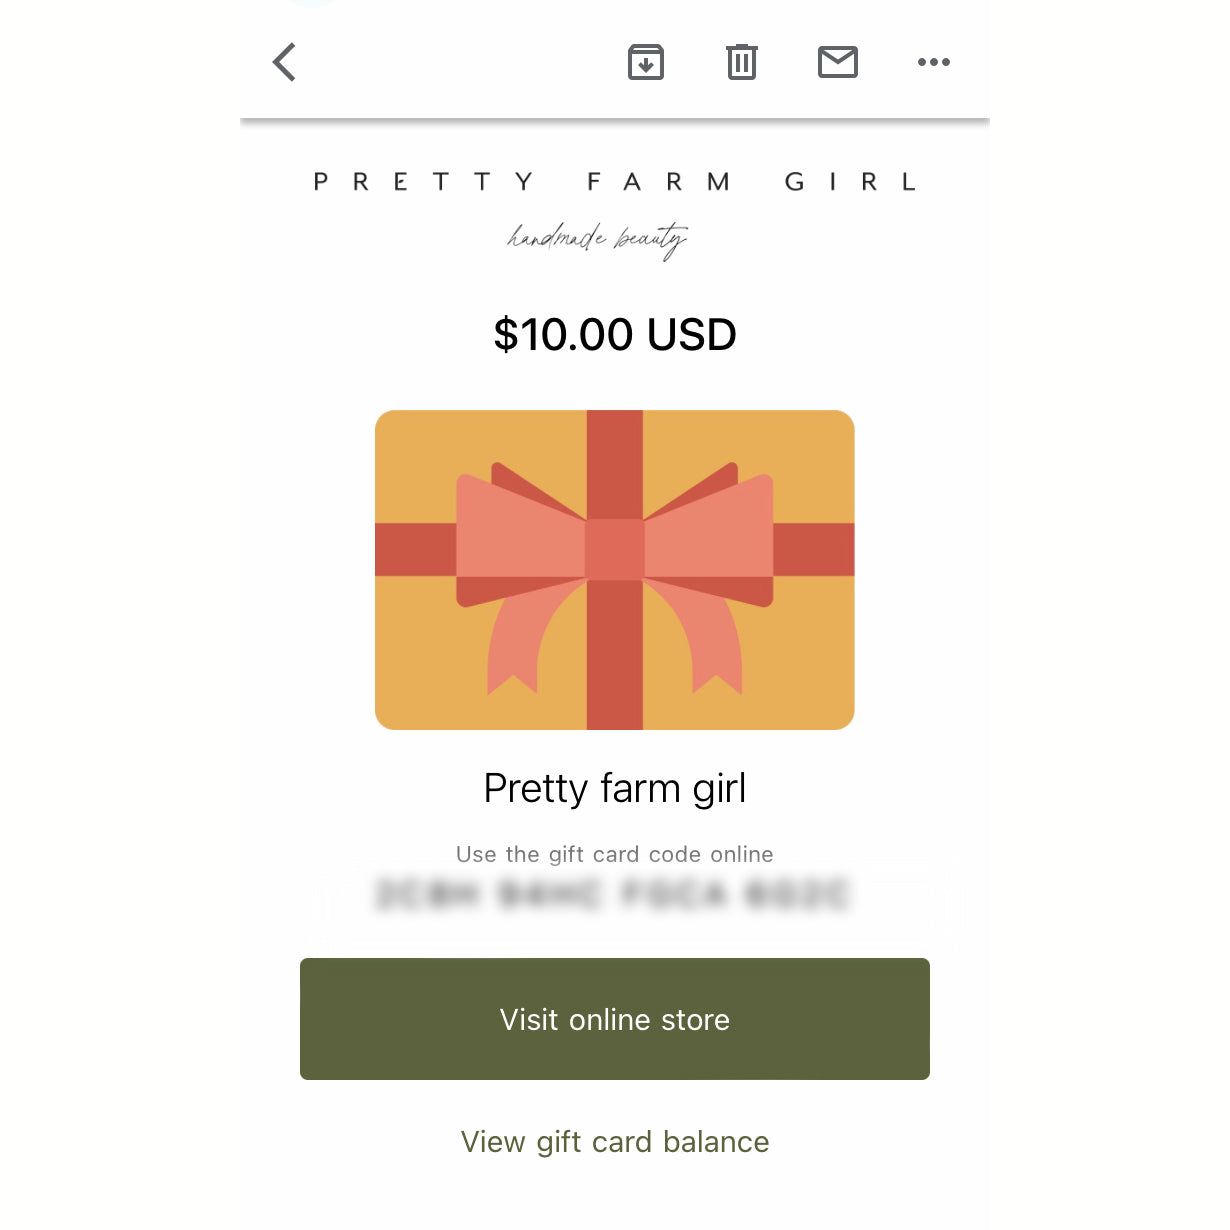 Pretty Farm Girl Digital Gift Card – Pretty farm girl